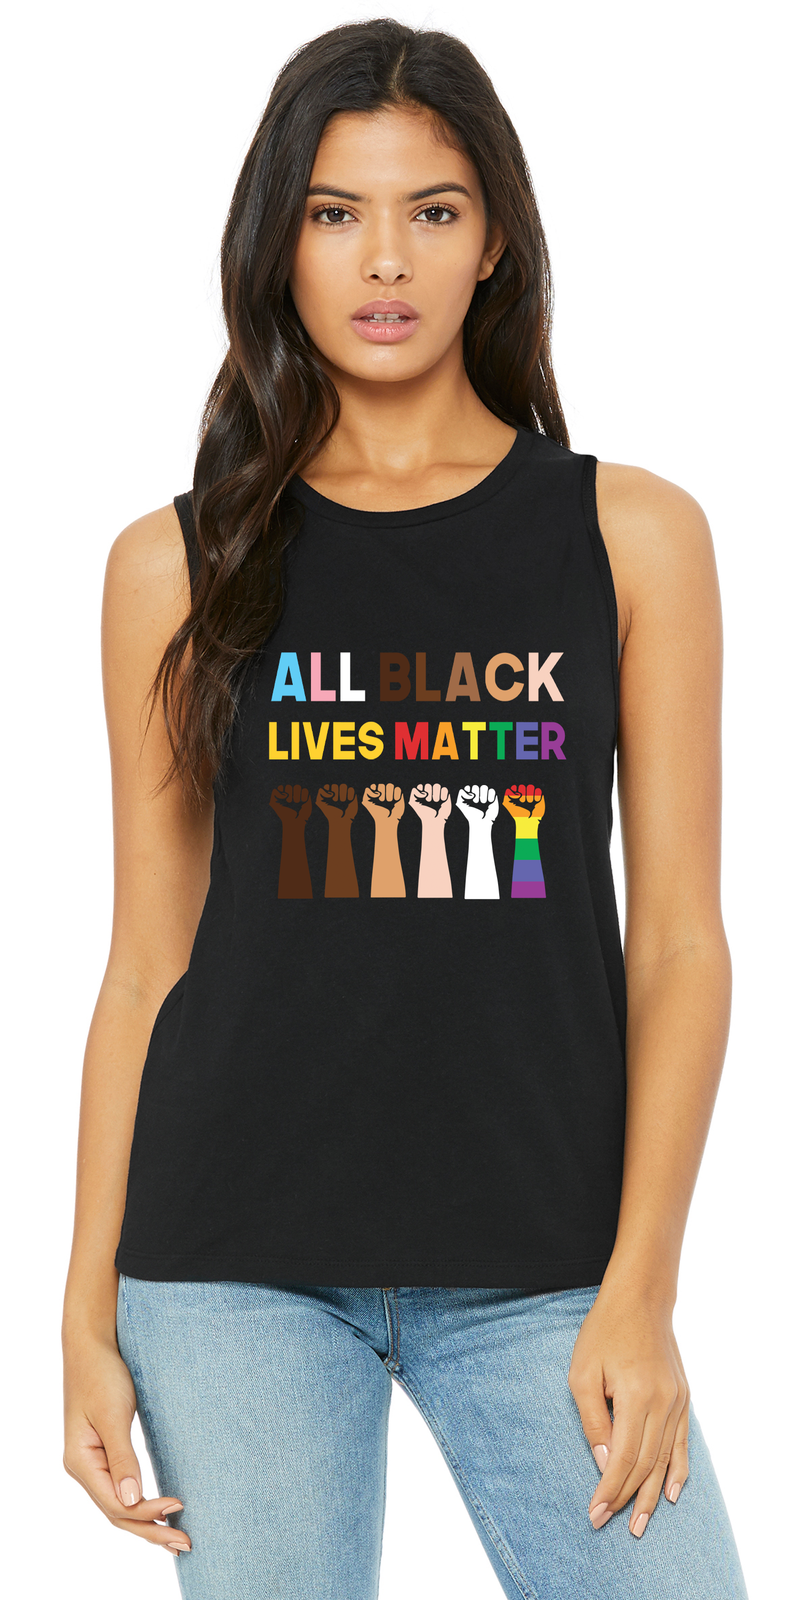 All Black Lives Matter Shirt